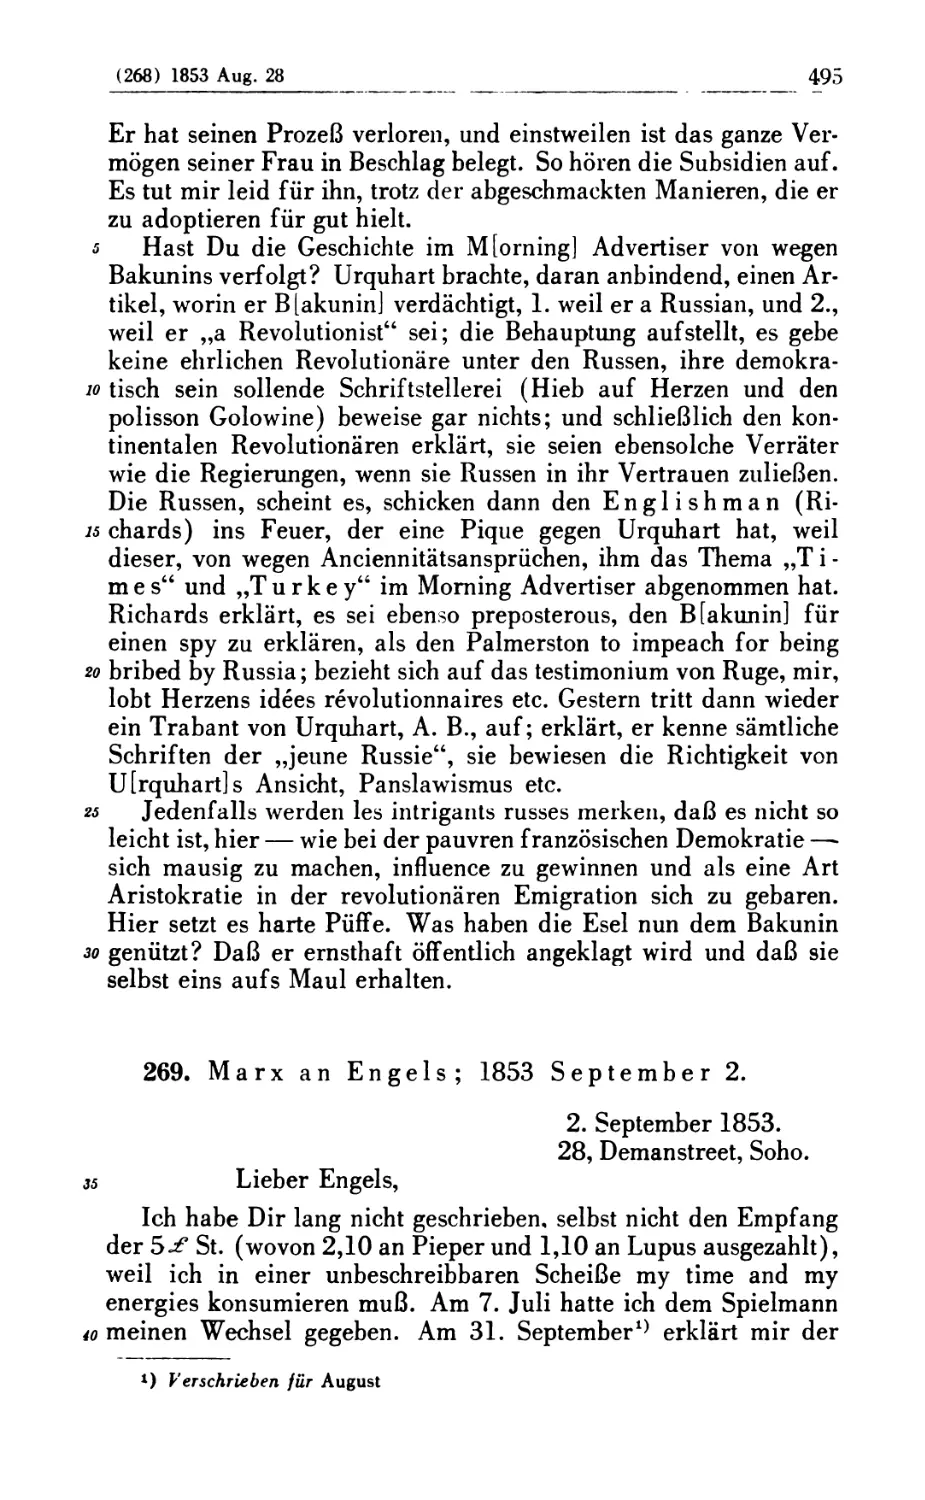 269. Marx an Engels; 1853 September 2